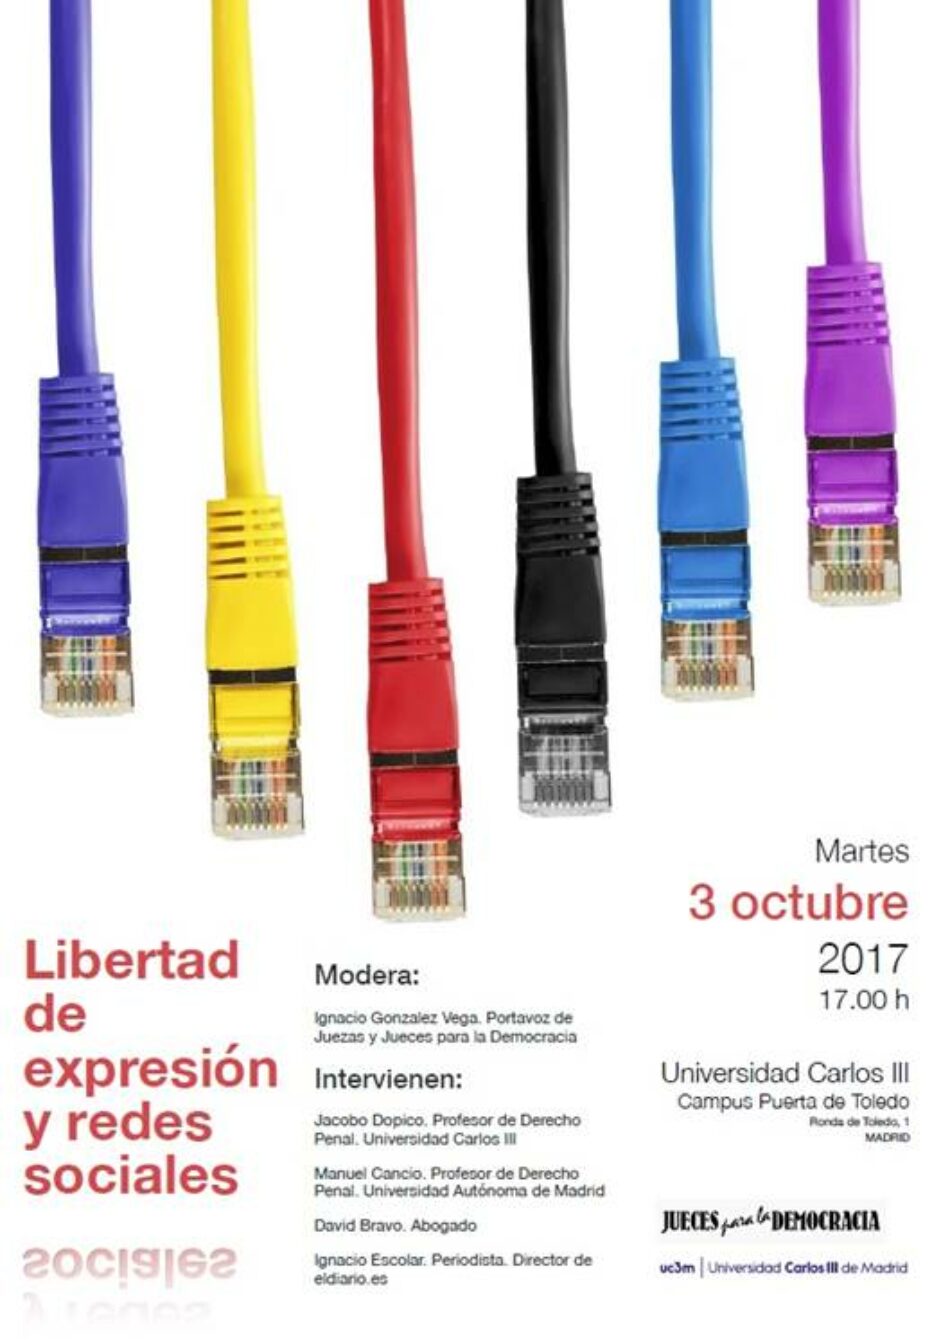 «Libertad de expresión y redes sociales»: acto el 3 de octubre